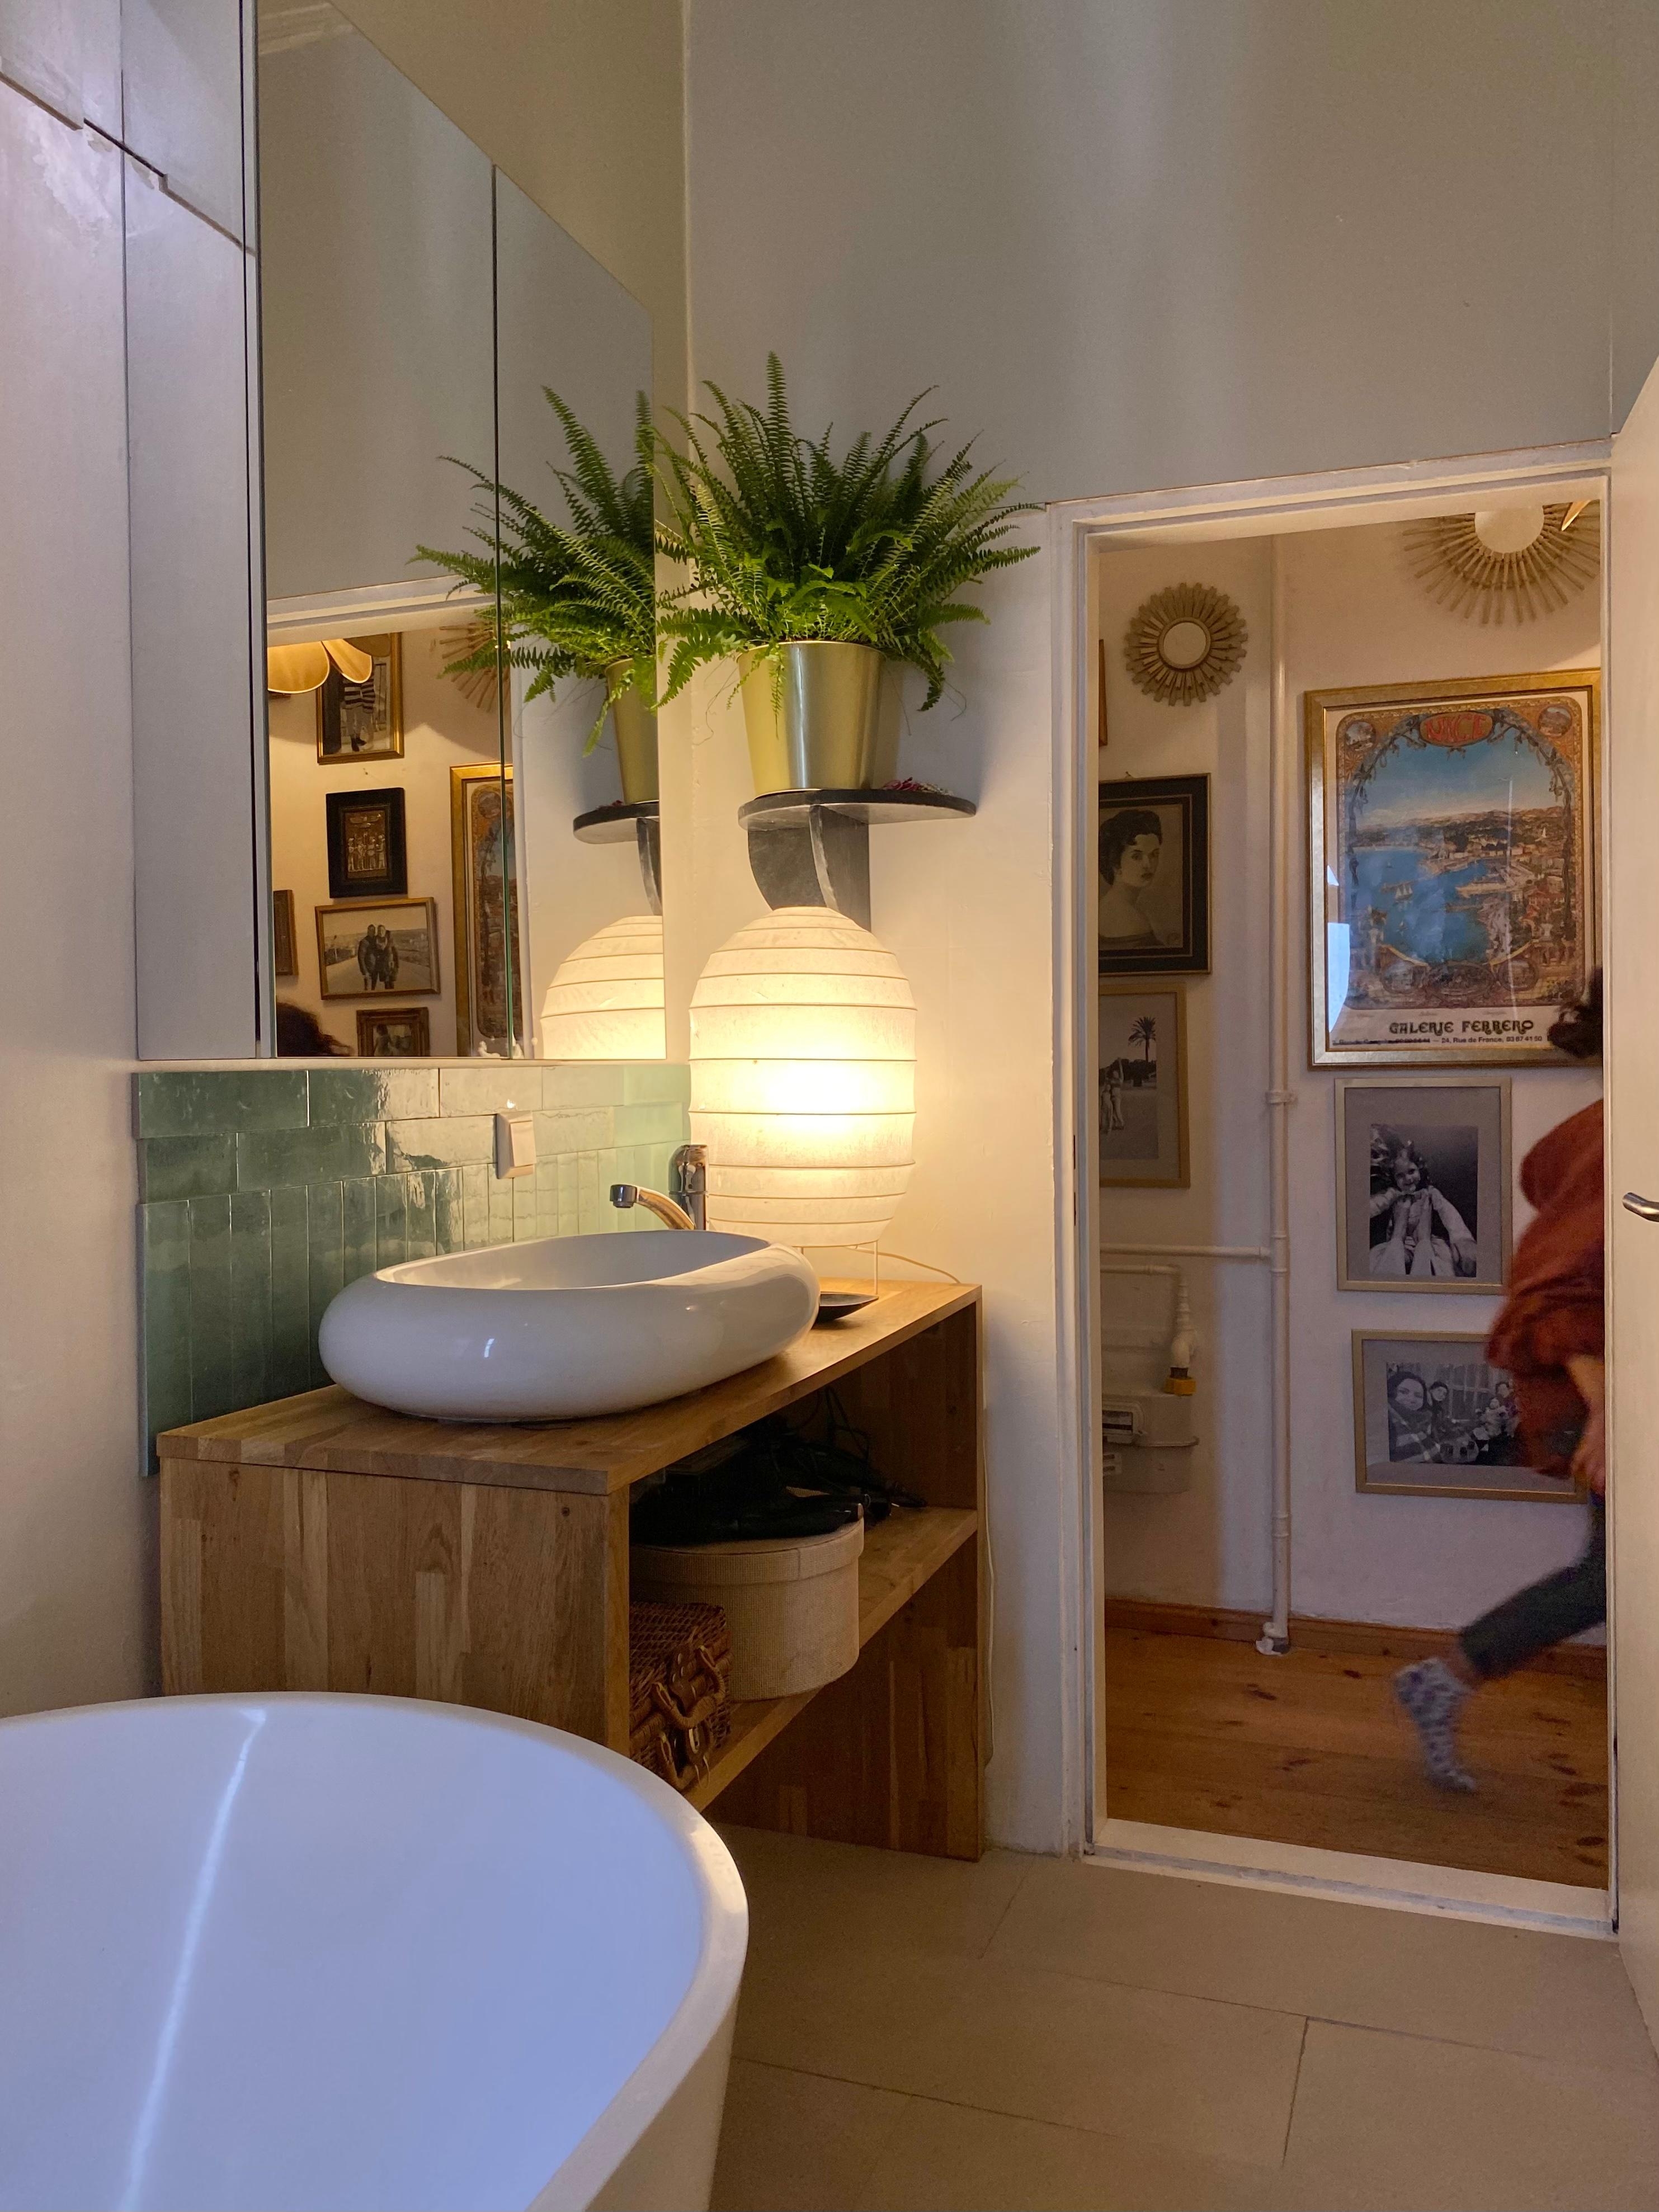 Kleines Sonntagsprojekt -->Fliesenspiegel #badezimmer #renovierung #fliesen #altbau